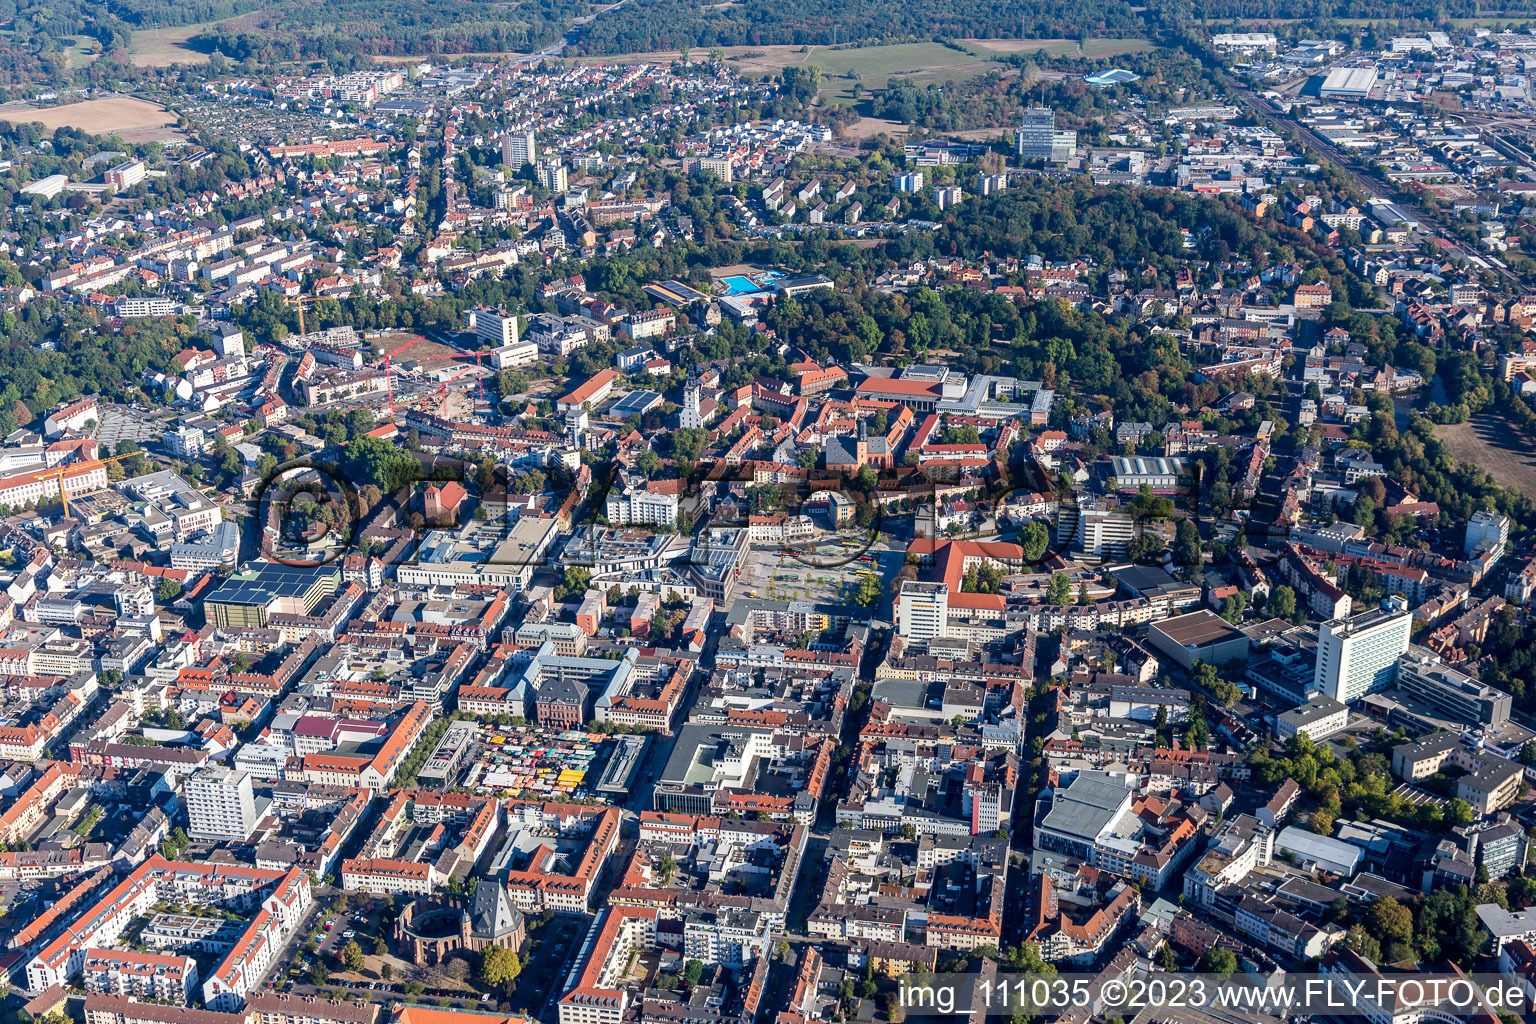 Luftbild von Hanau im Bundesland Hessen, Deutschland